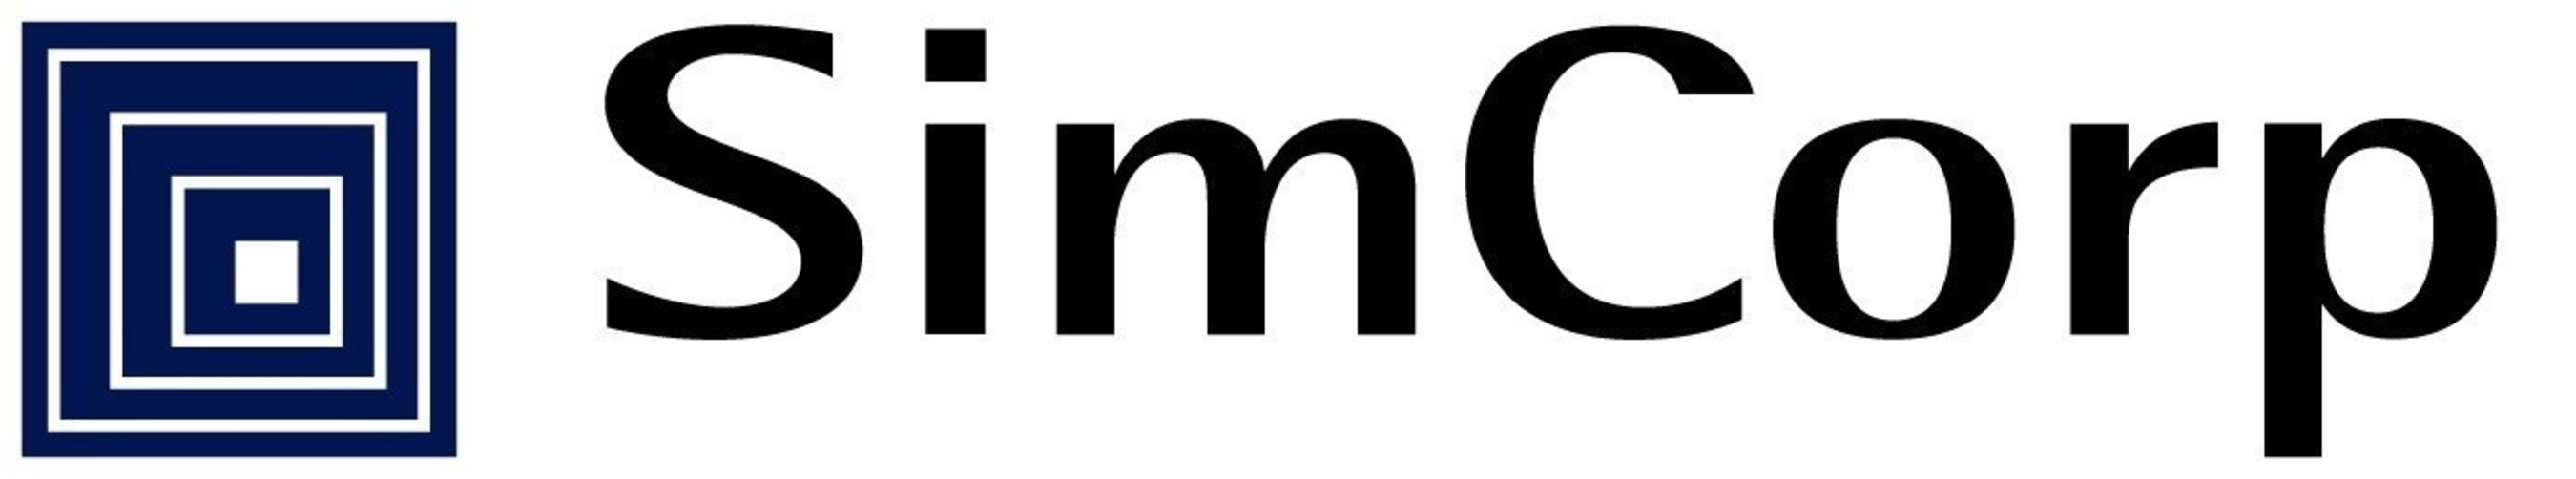 SimCorp Logo